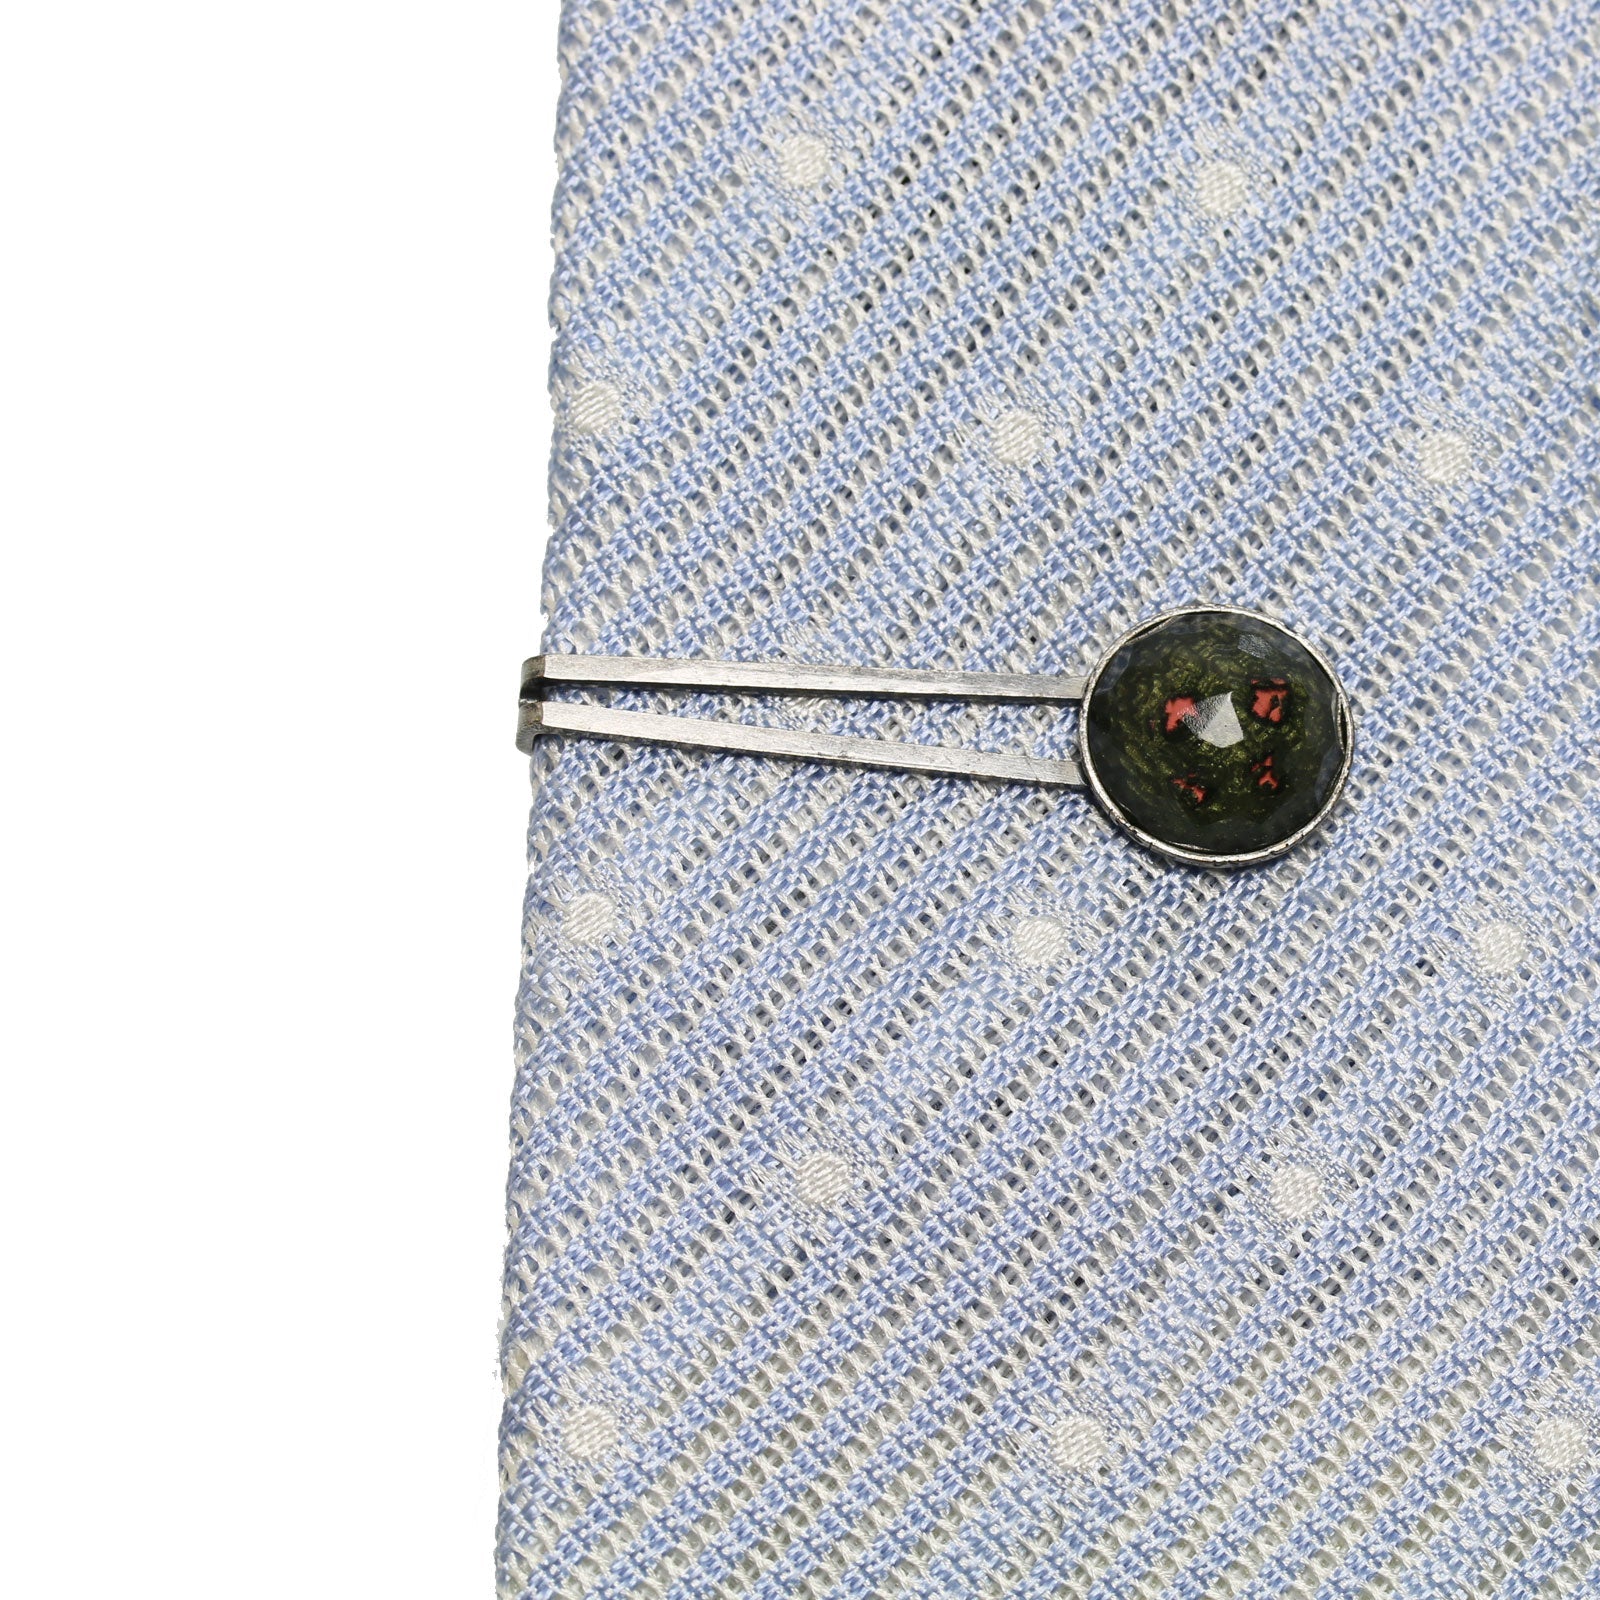 Simple Tie Clip Black Button Handmade TAMARUSAN